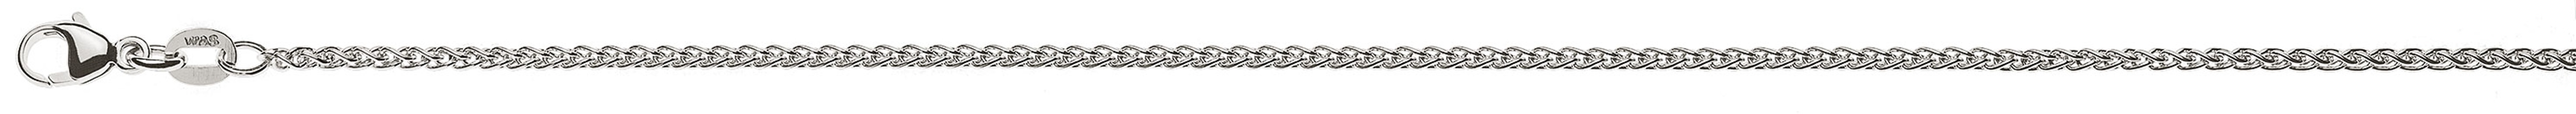 AURONOS Prestige Necklace white gold 18K cable chain 40cm 1.65mm